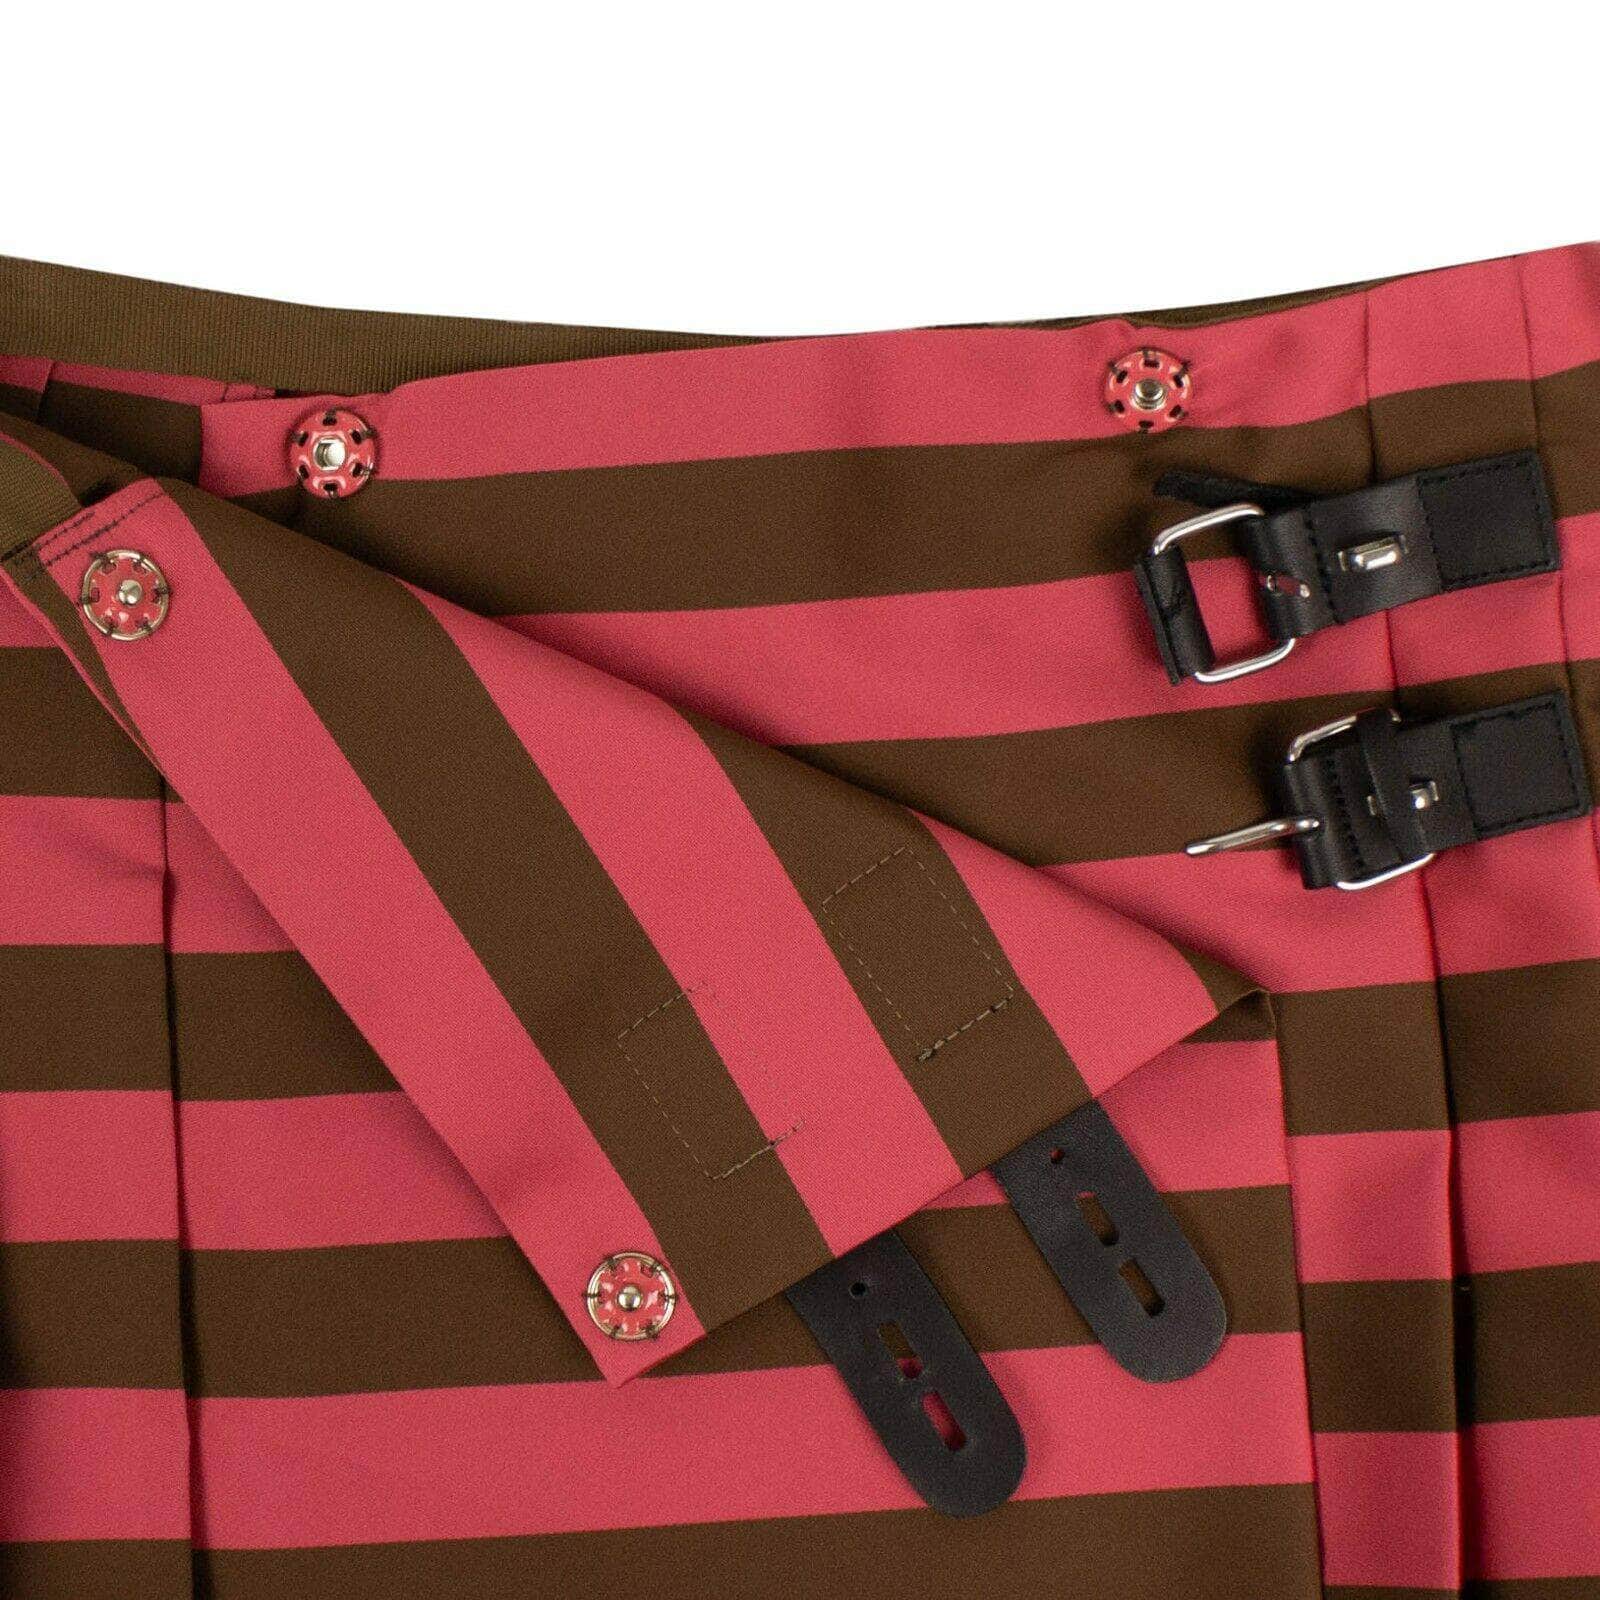 RED VALENTINO 250-500, size-40 40 Striped Pleated Mini Skirt 67V-420/40 67V-420/40